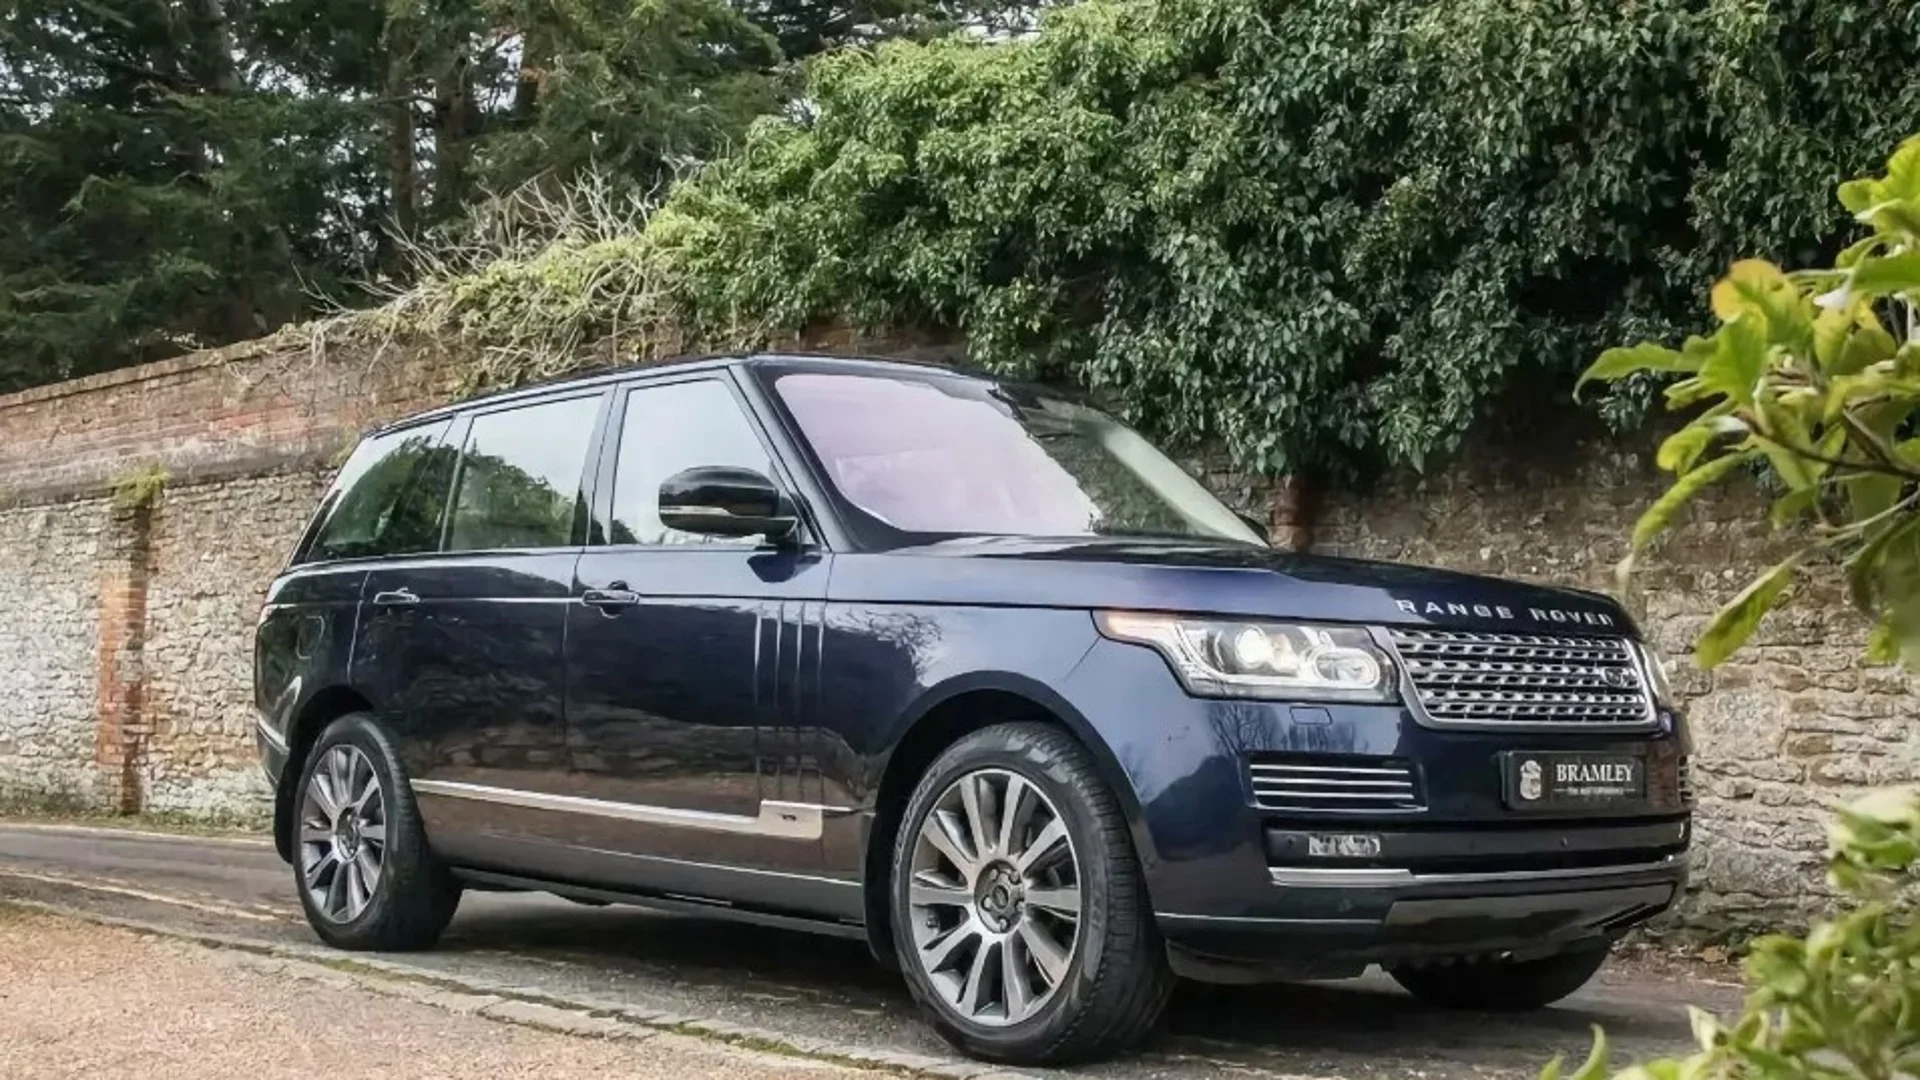 Продава се дизелов Range Rover, който е возил Елизабет II и Барак Обама